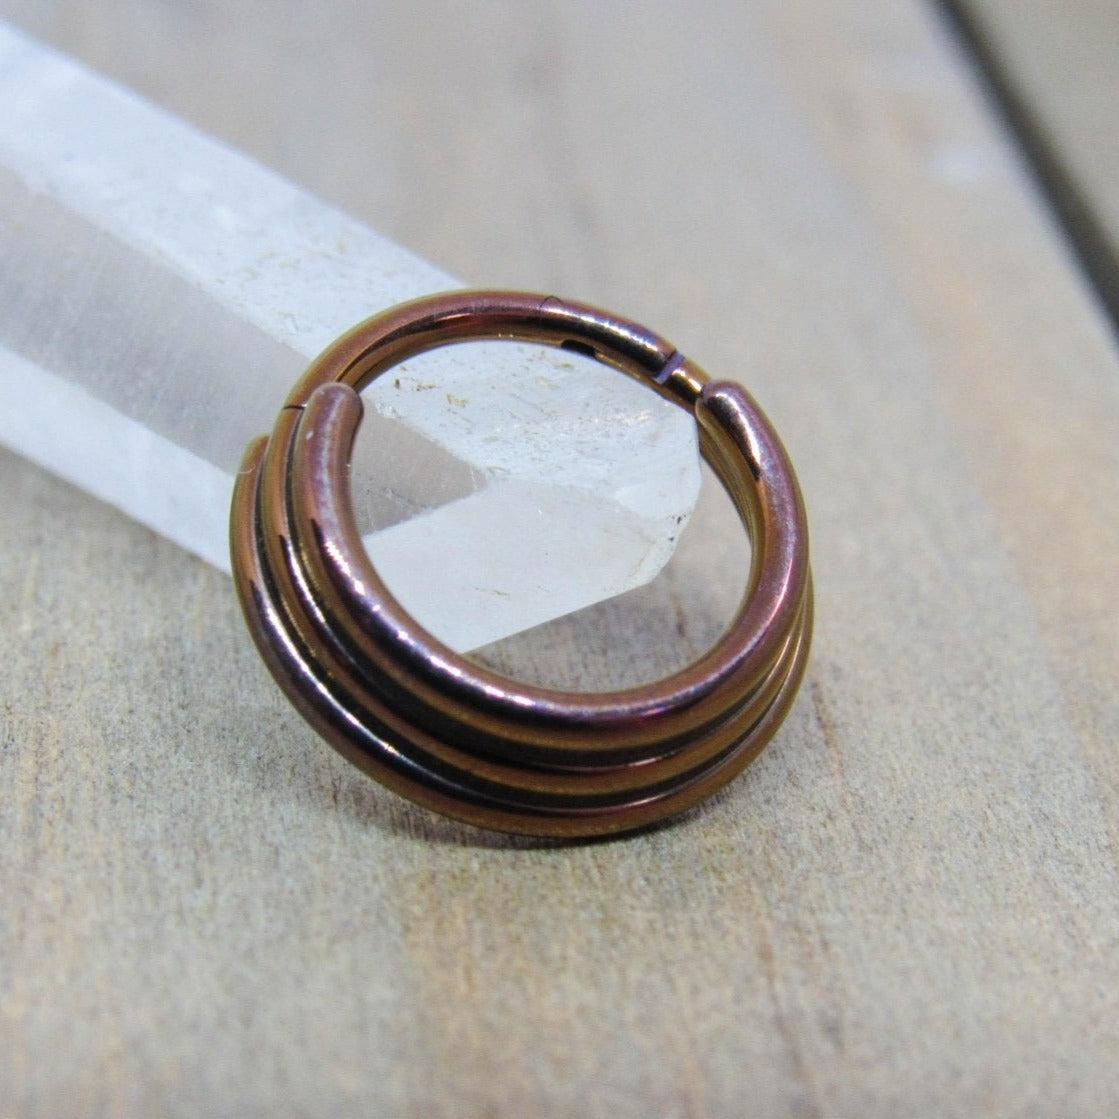 16g bronze titanium anodized daith septum piercing hinged segment ring 5/16" diameter